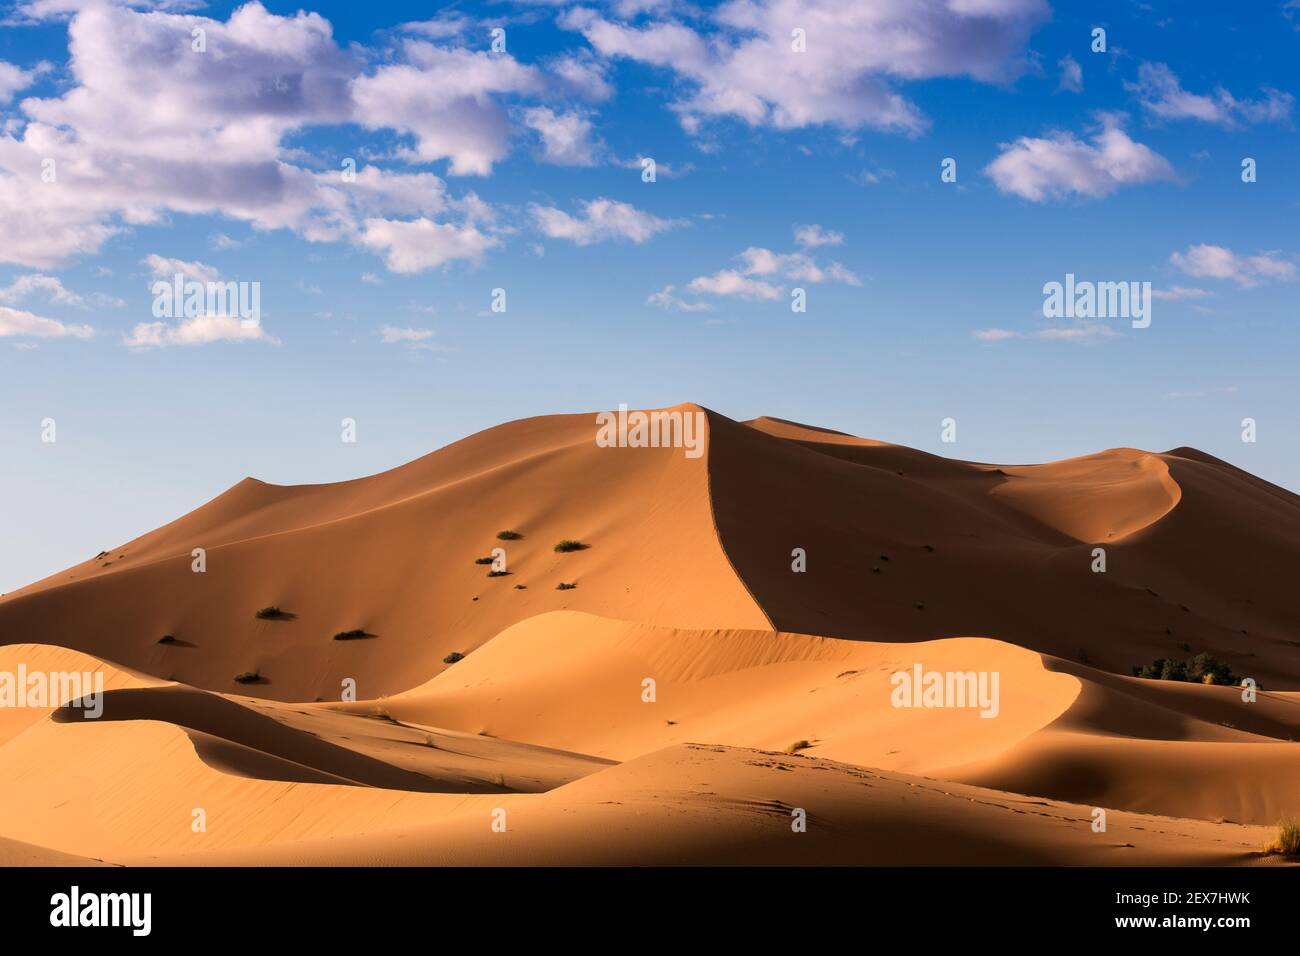 Marocco, Merzouga, le dune di Erg Chebbi all'alba, le dune del deserto si estendono per 30 km e raggiungono altezze di 250 metri Foto Stock